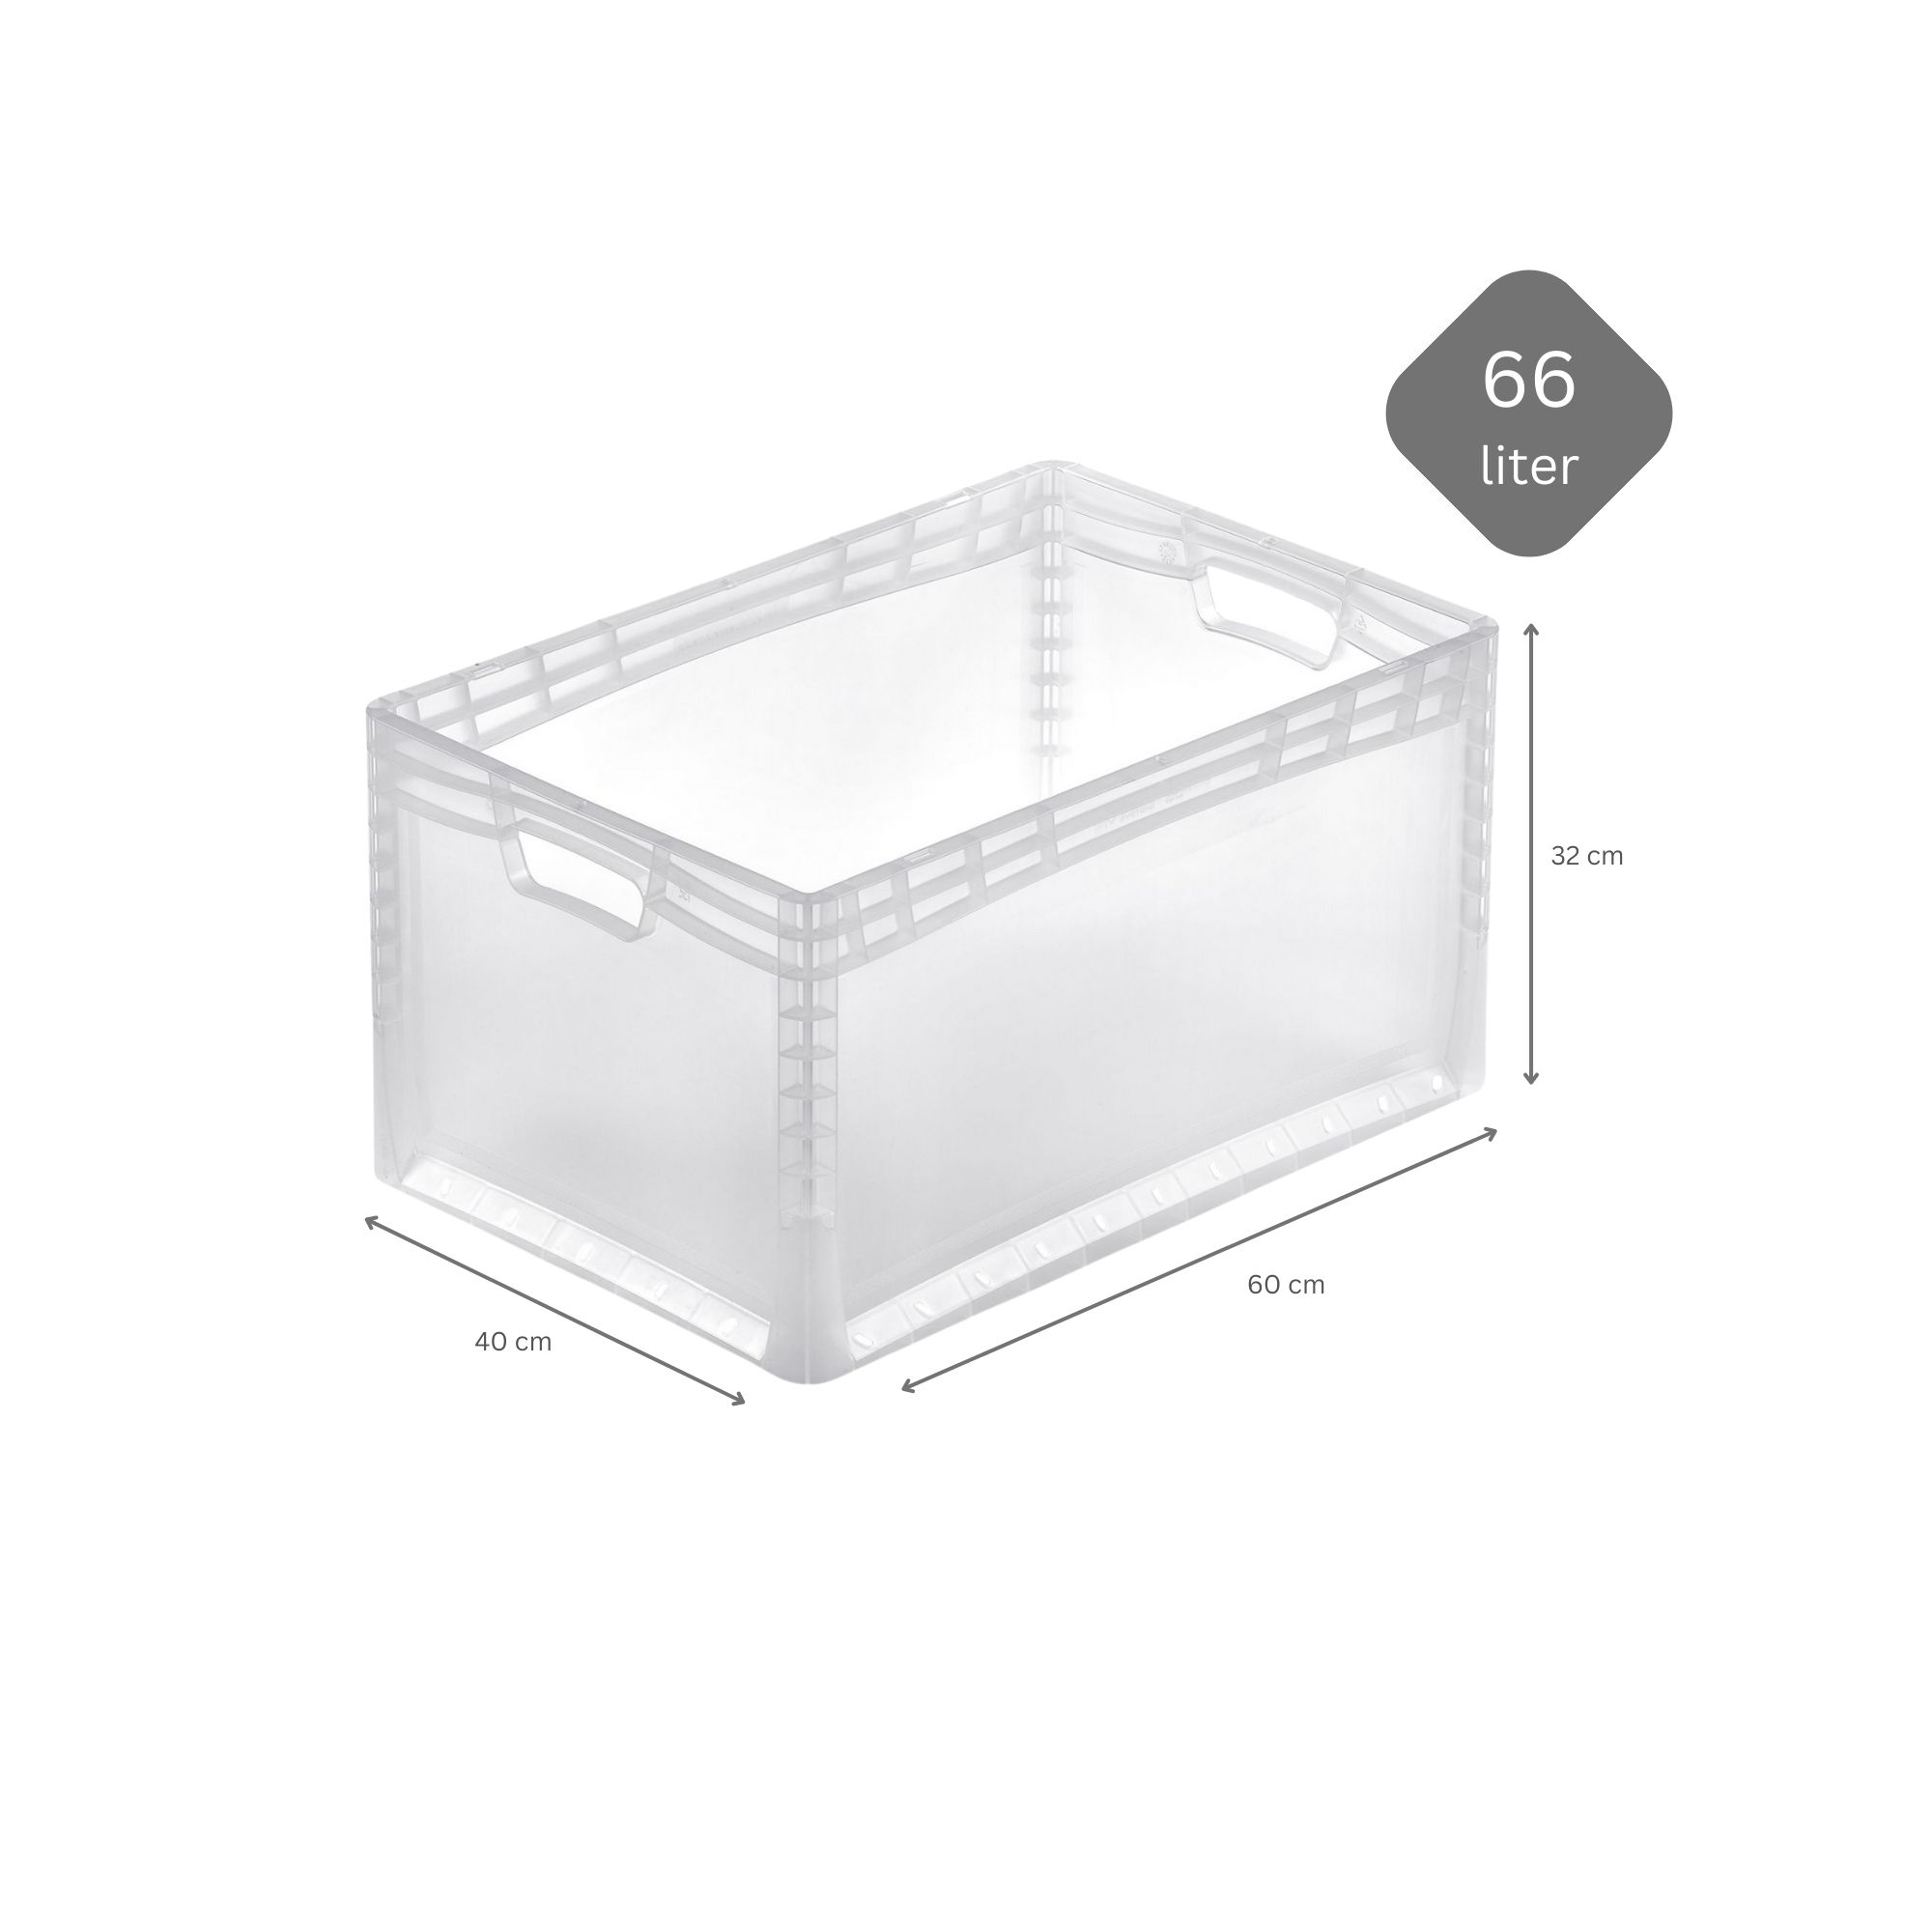 SparSet 10x Transparenter Eurobehälter LightLine mit offenem Griff | HxBxT 32x40x60cm | 66 Liter | Eurobox, Transportbox, Transportbehälter, Stapelbehälter